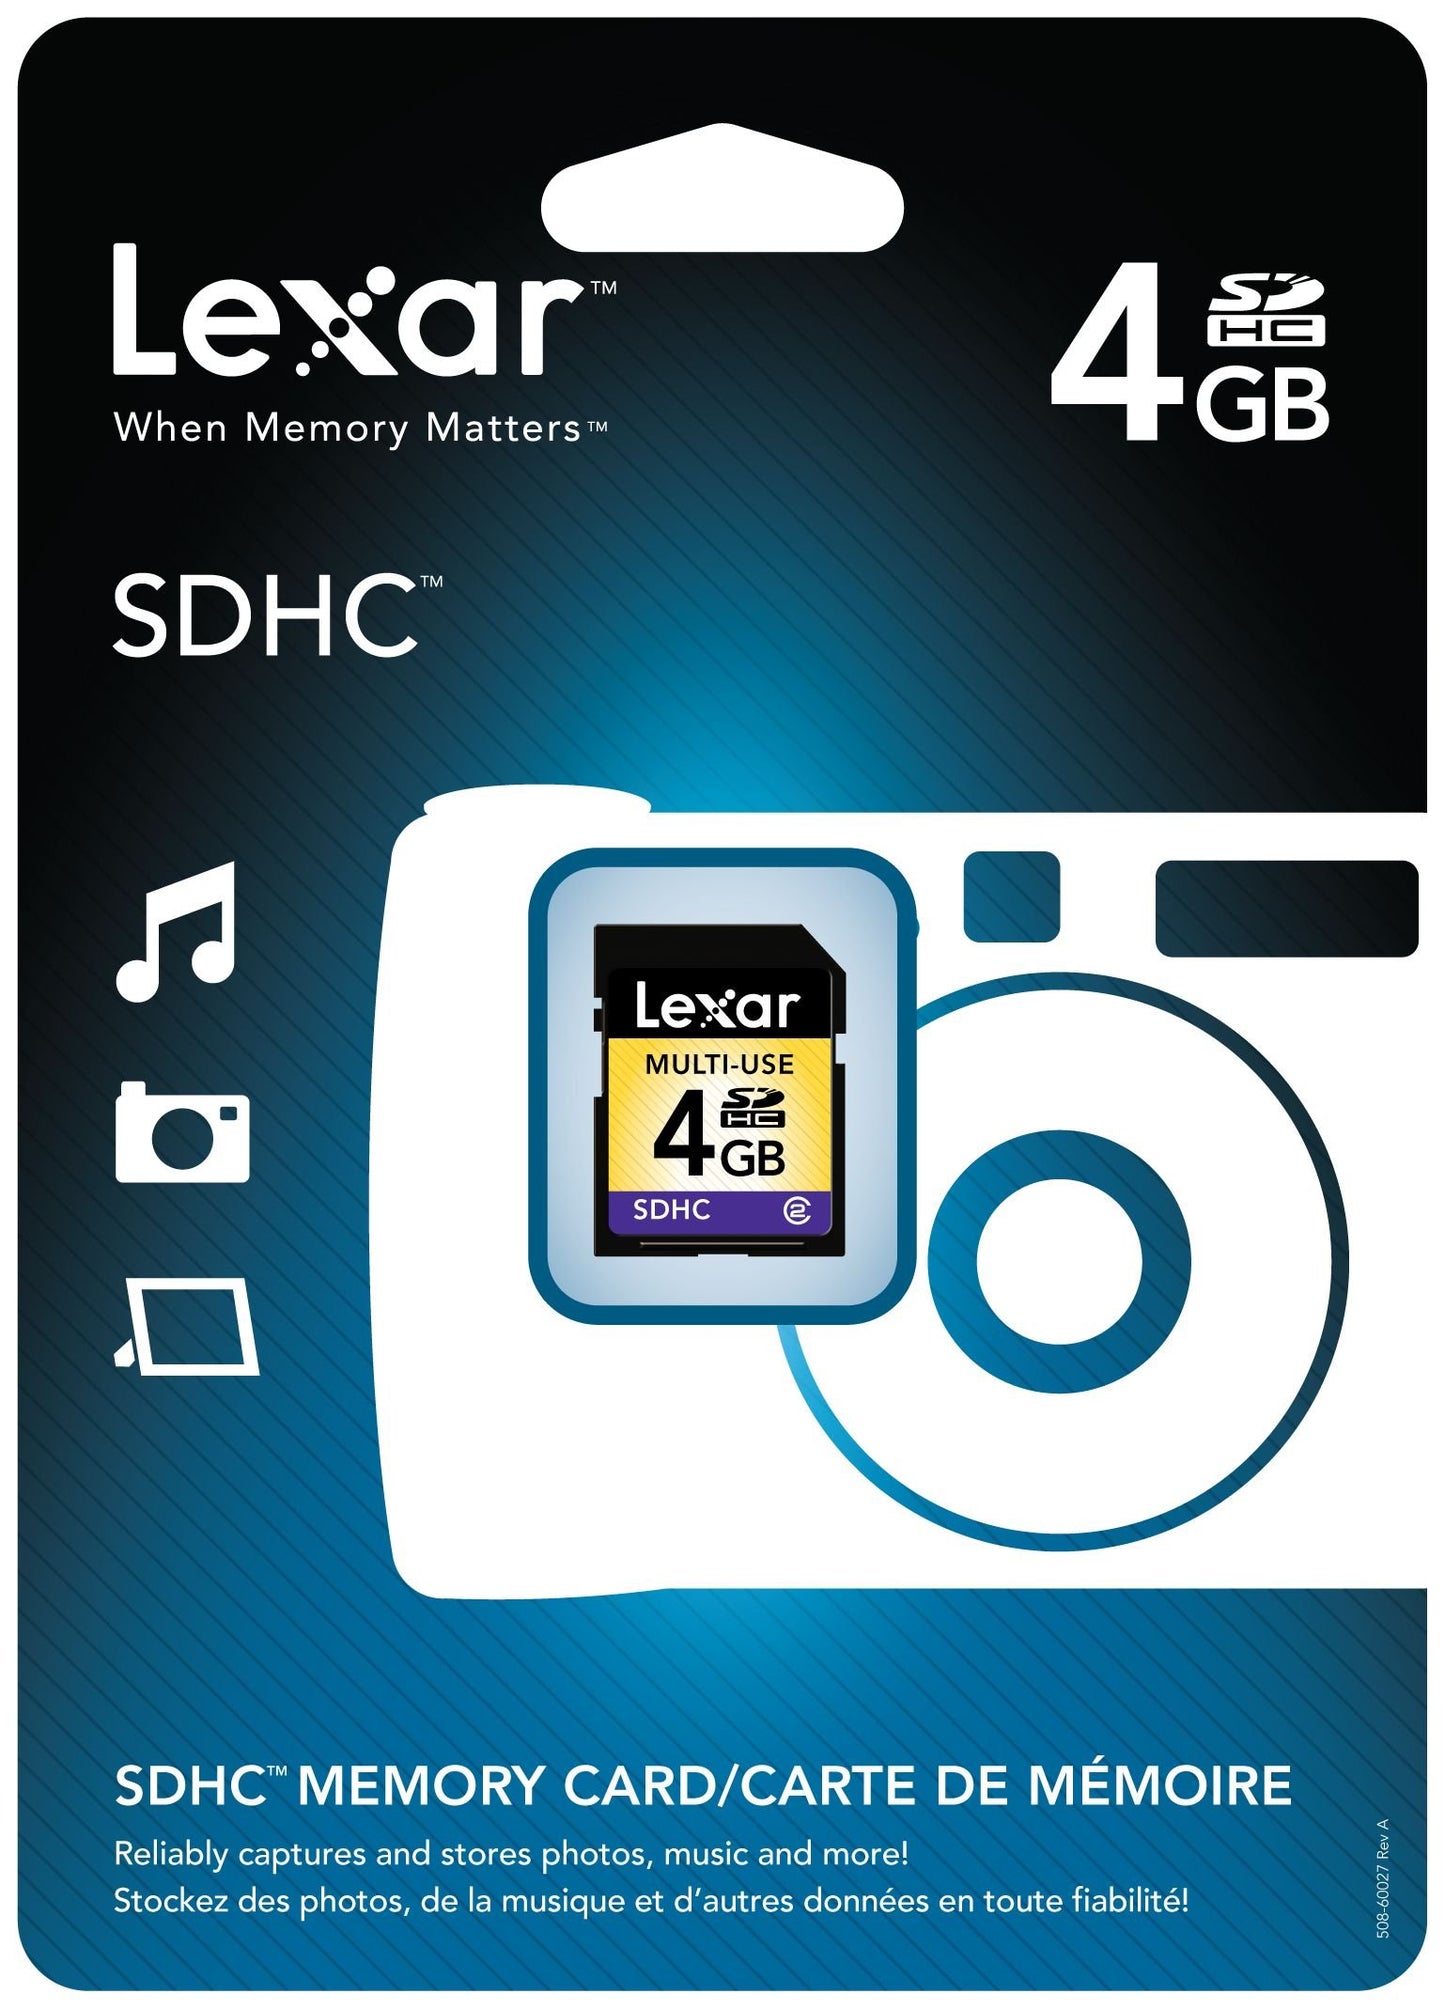 Lexar SDHC Class 2 Flash Memory Card